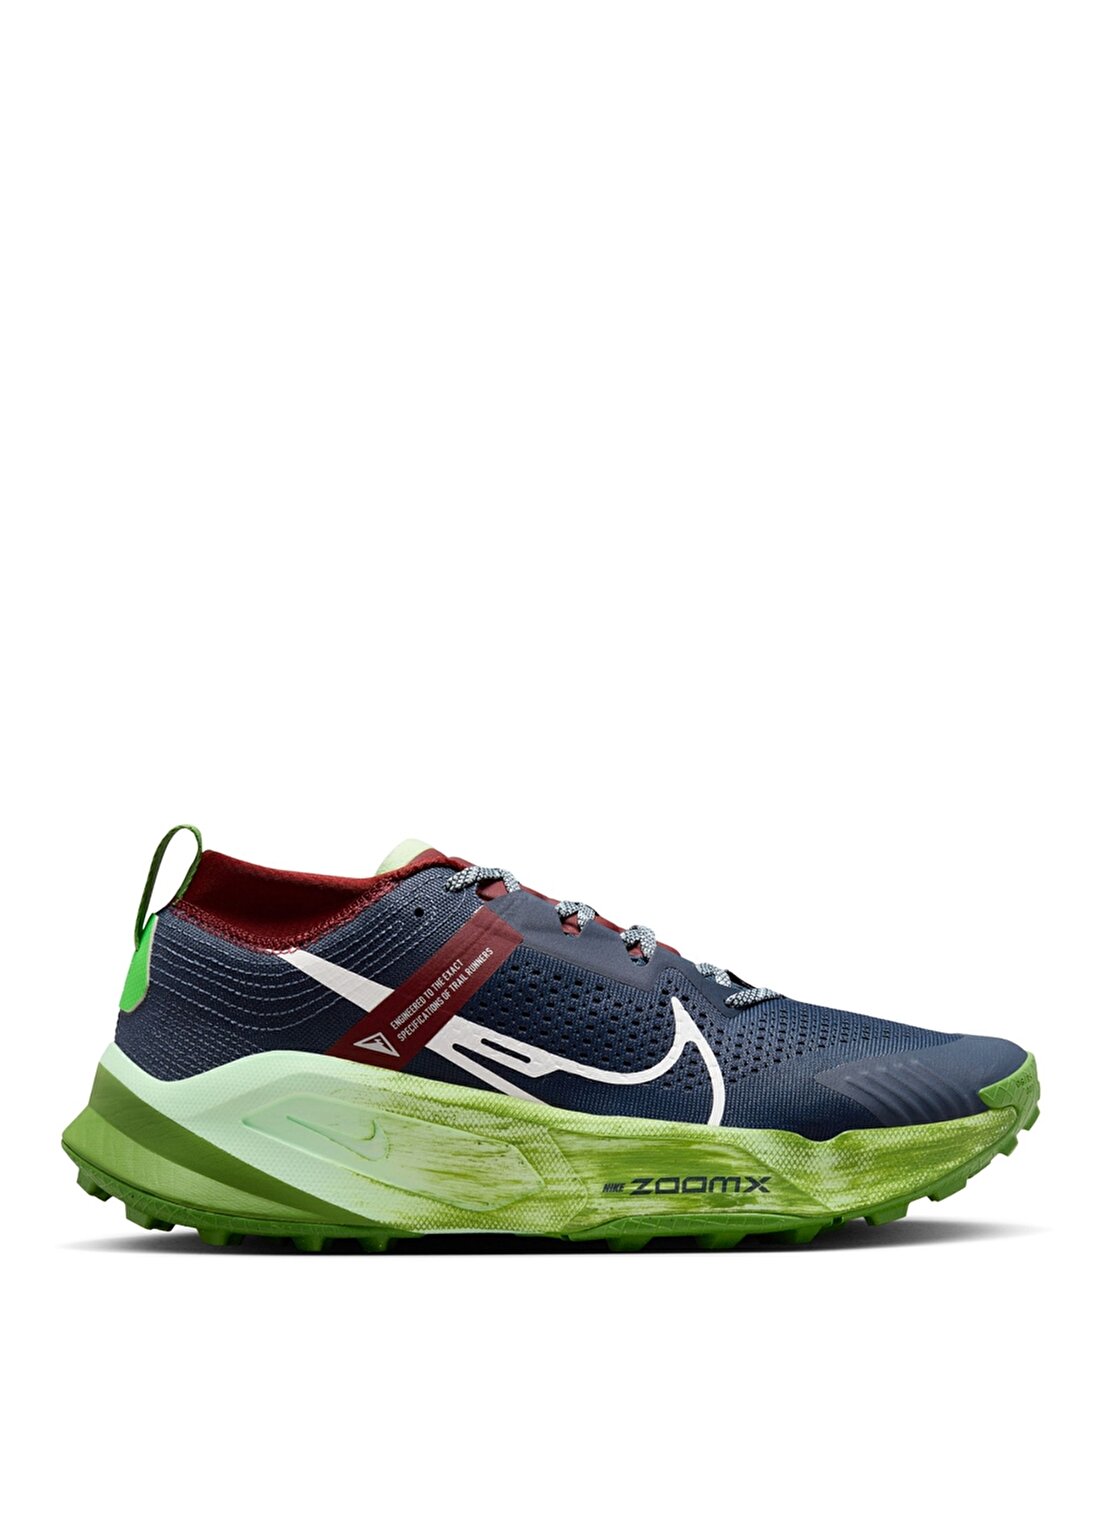 Nike Lacivert - Yeşil Erkek Koşu Ayakkabısı DH0623-403- ZOOMX ZEGAMA TRAIL